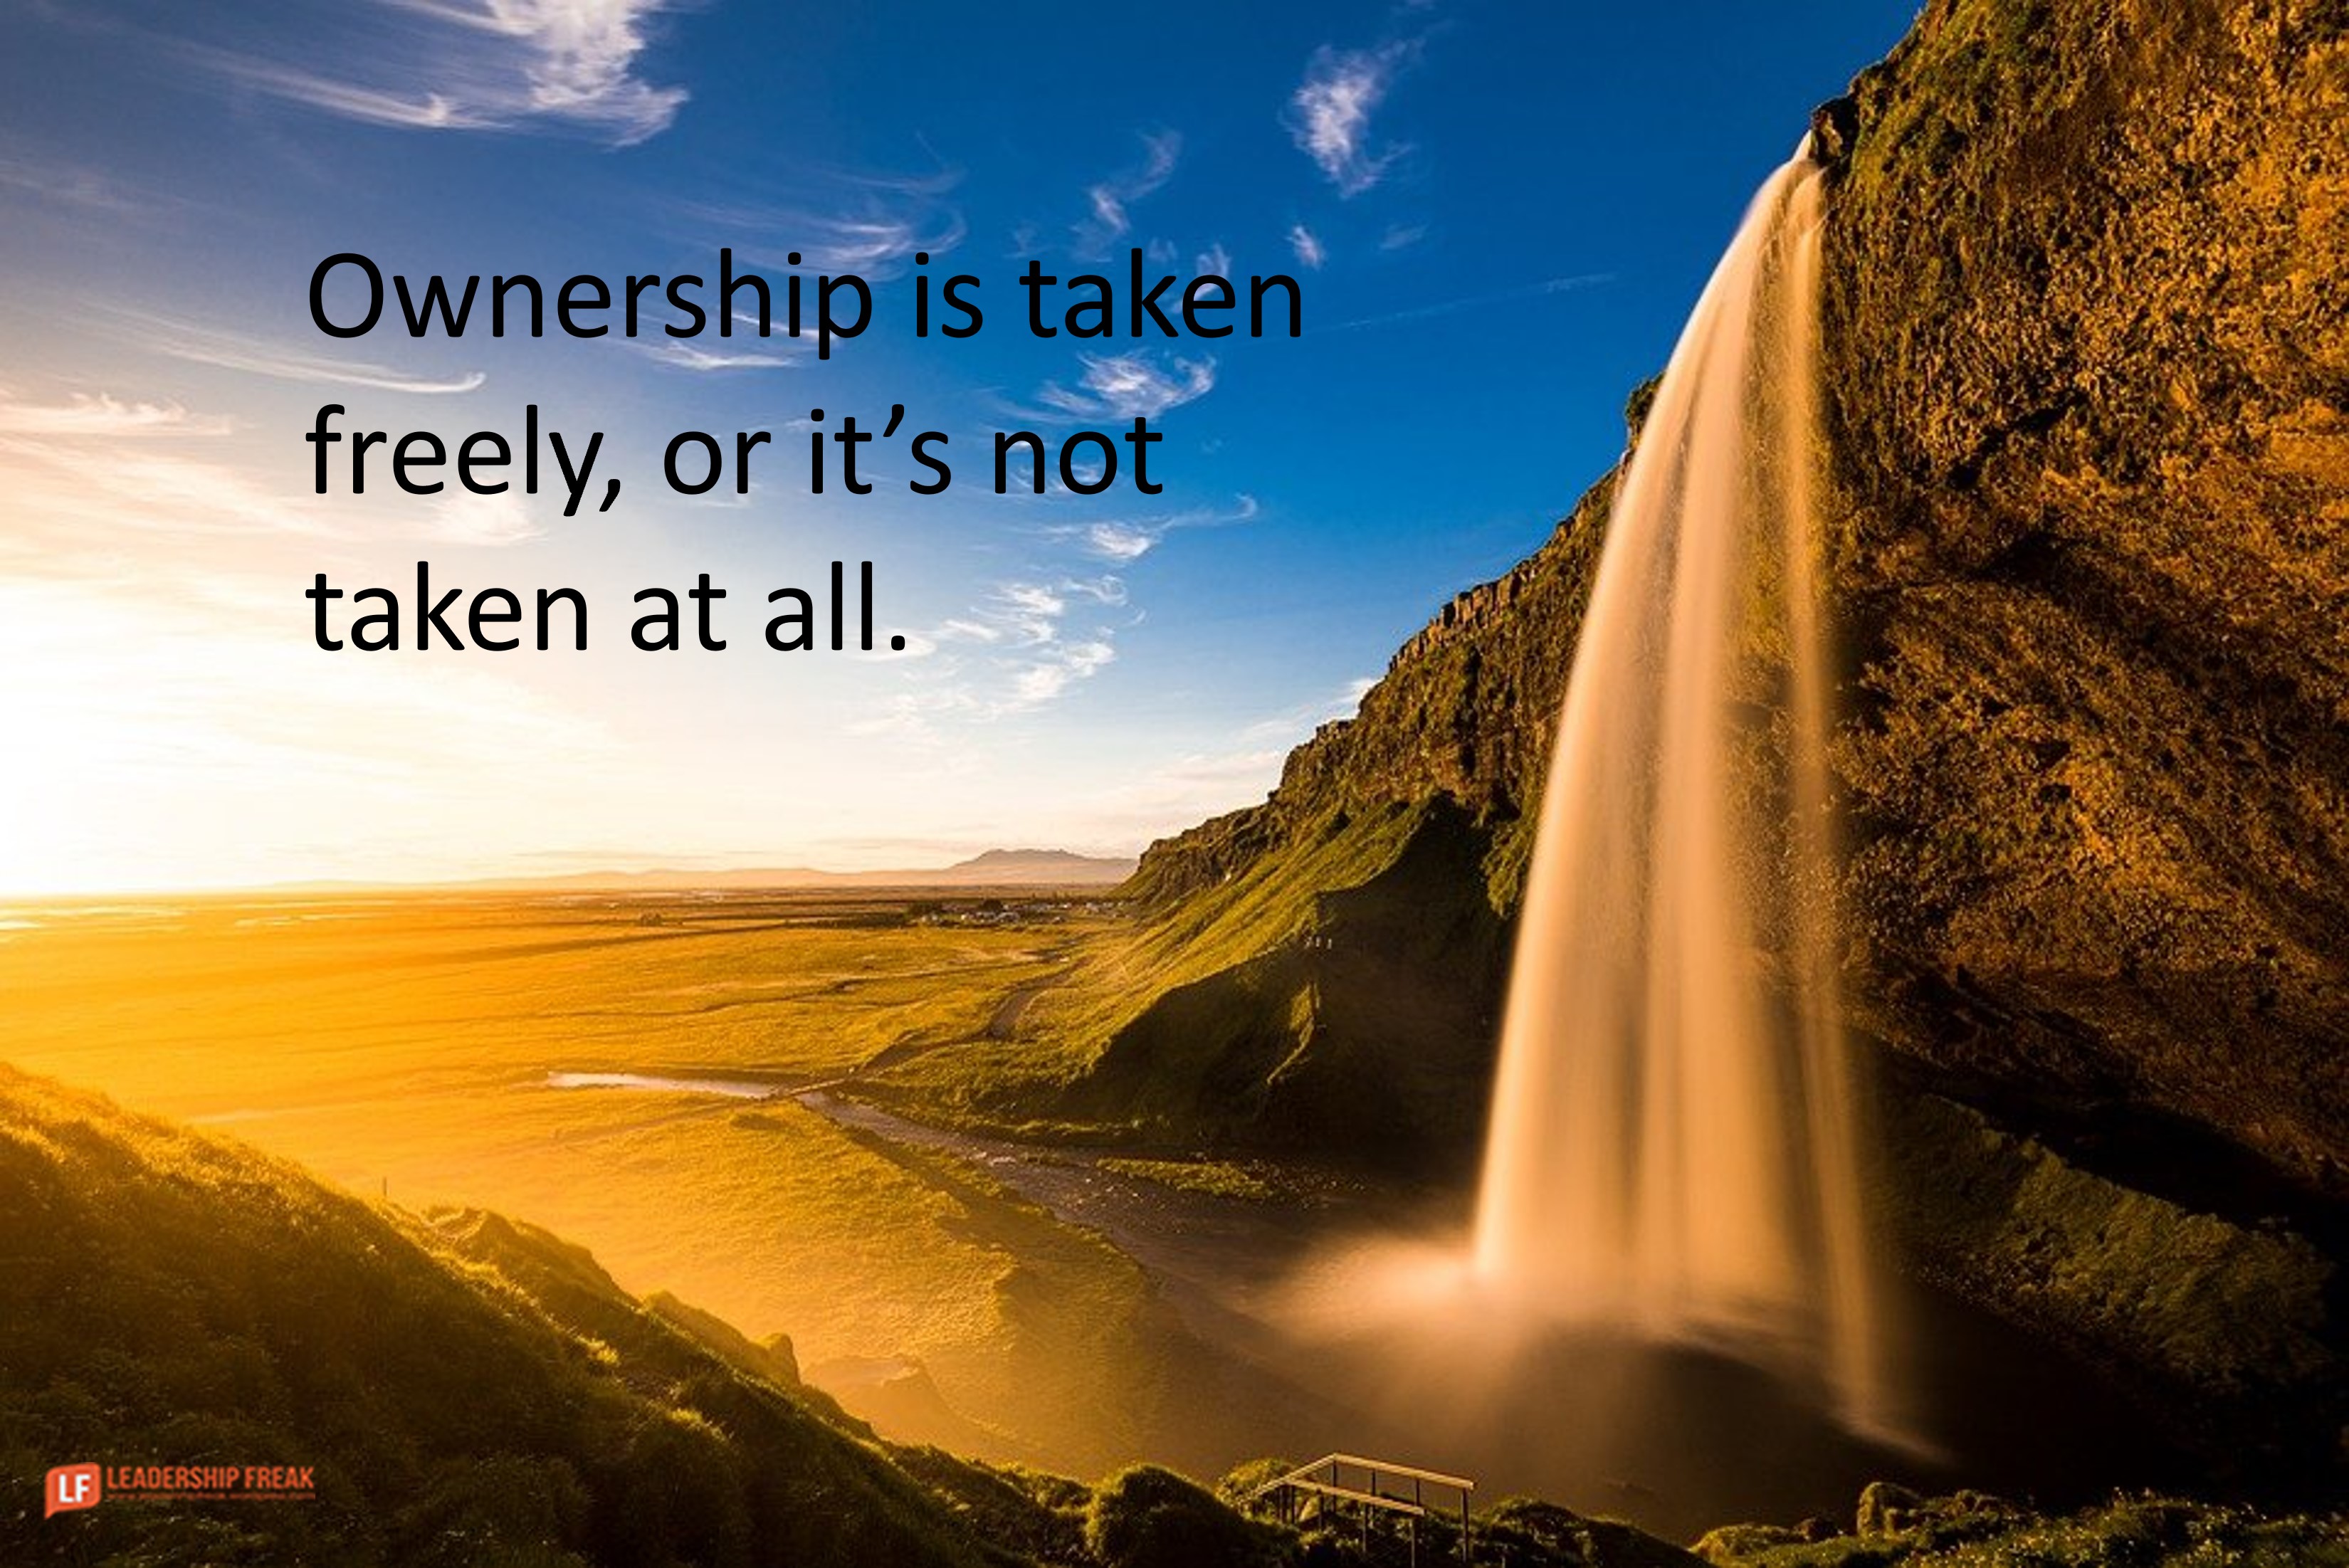 5 Ways to Take Ownership at Work